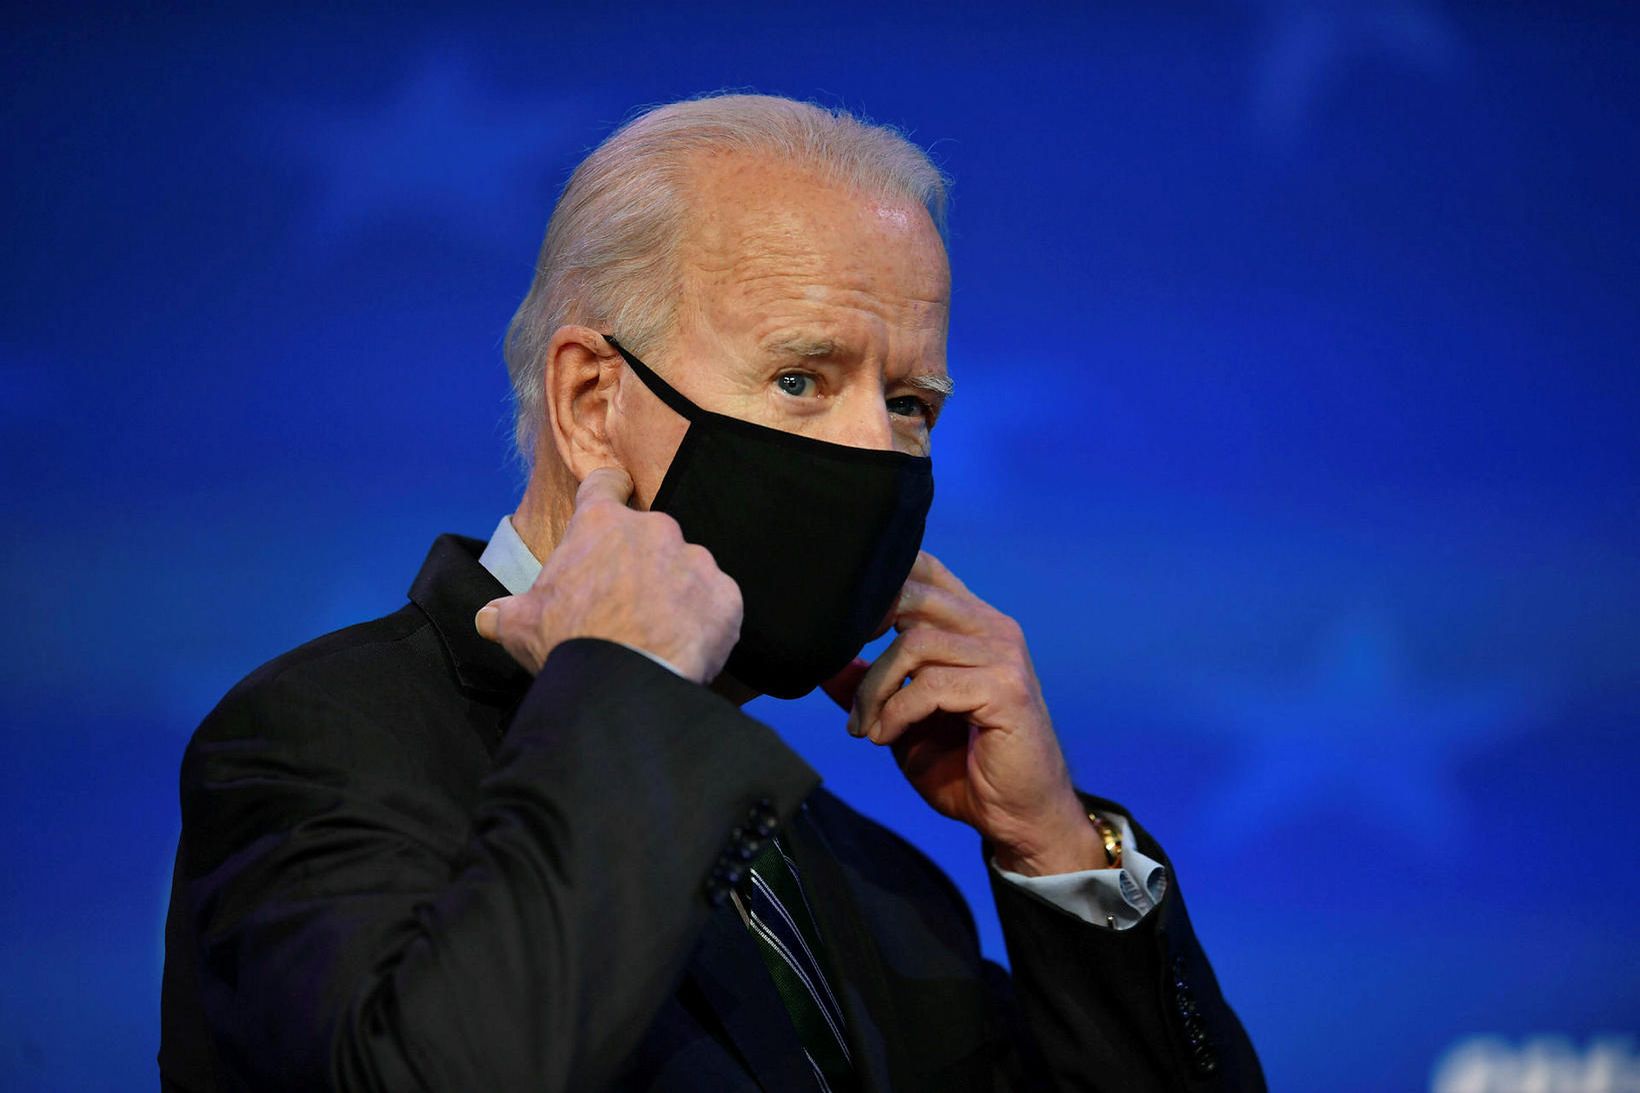 Joe Biden hefur mikla trú á vísindum ólíkt fráfarandi forseta.